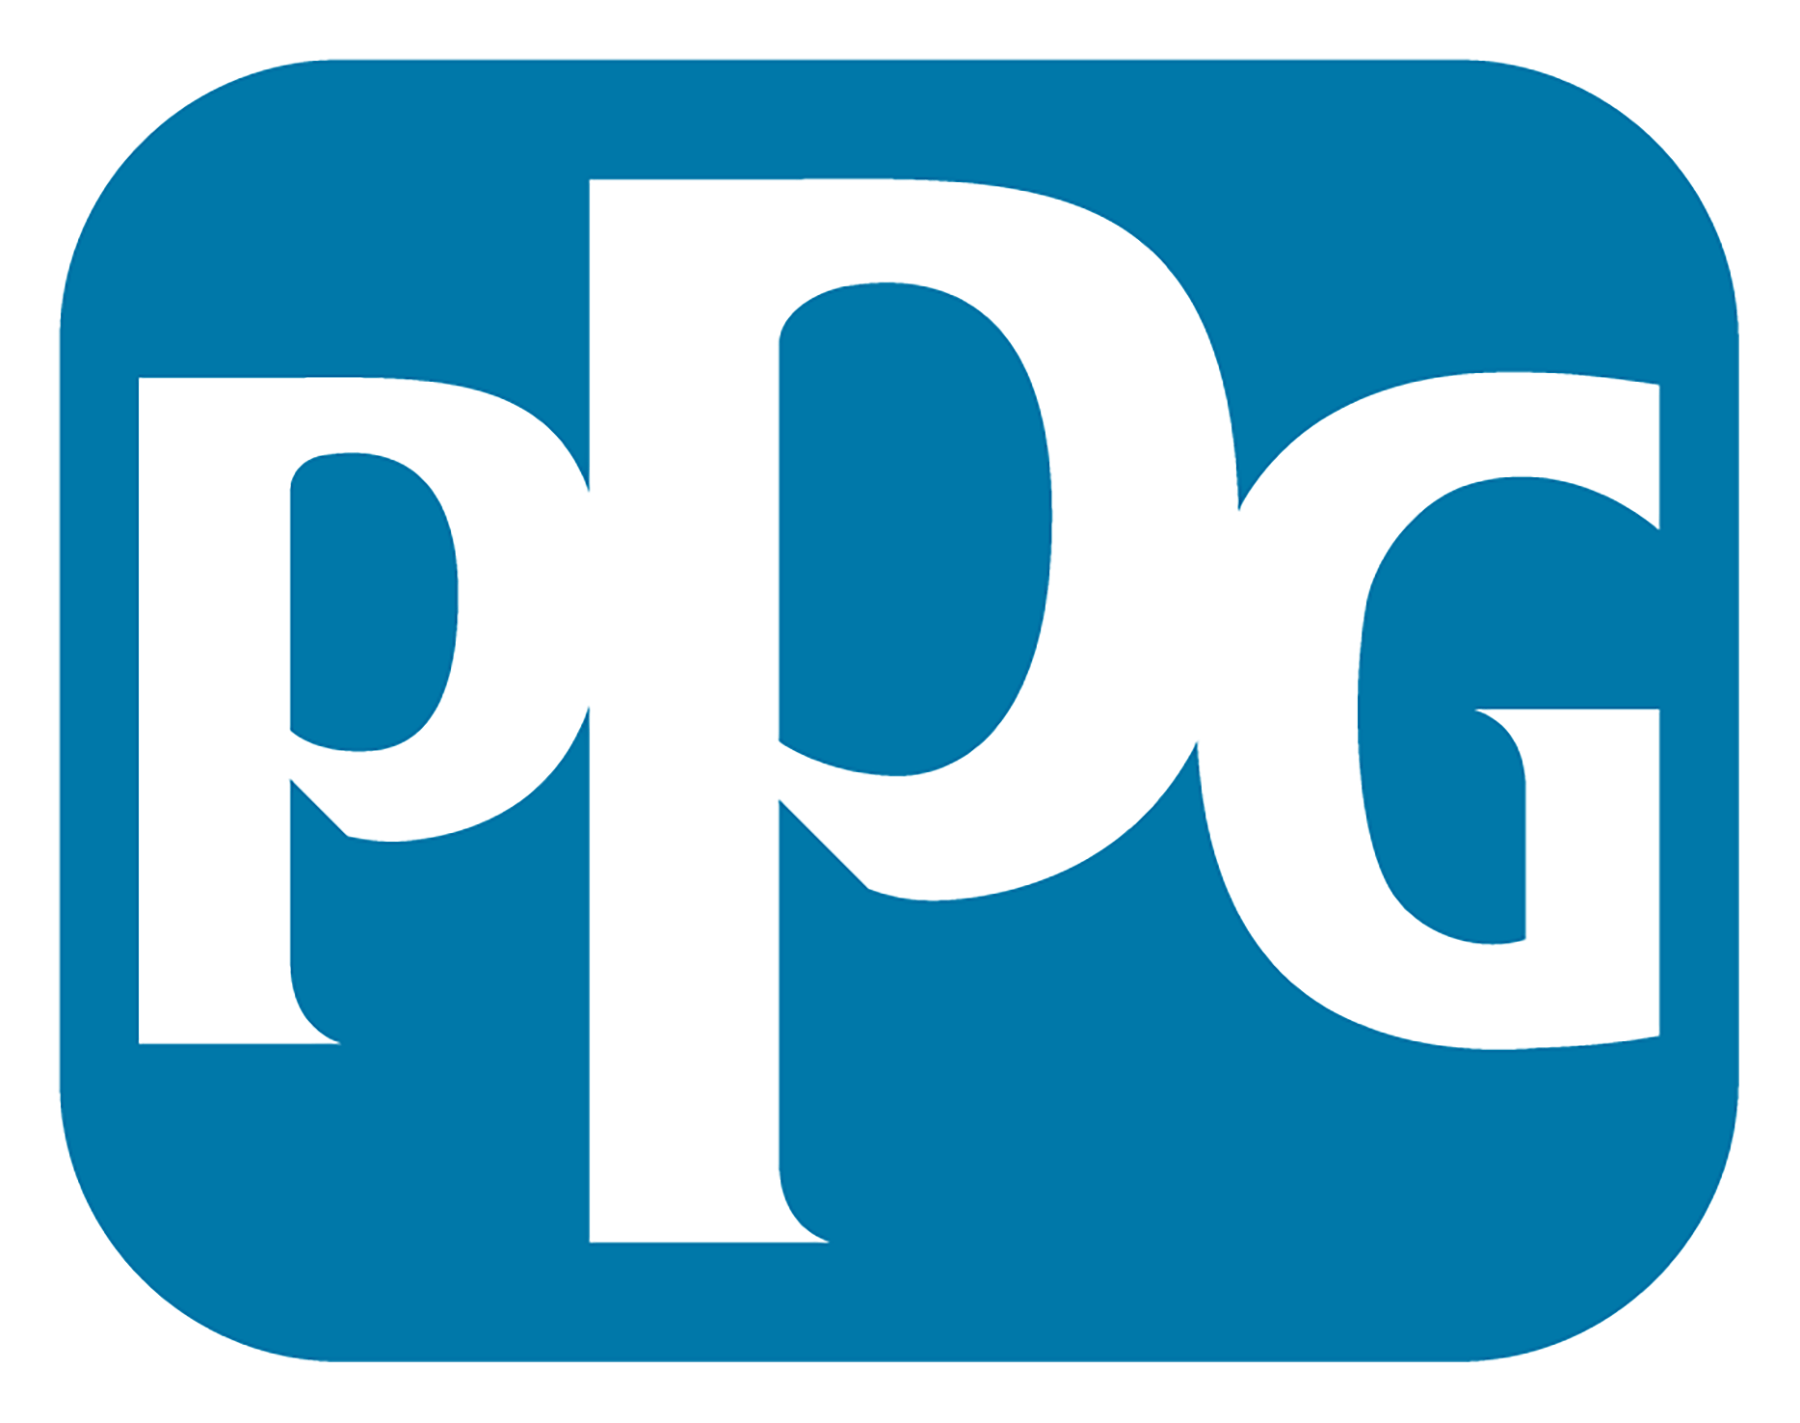 PPG Logo - PPG Full Color Logo | PPG Newsroom